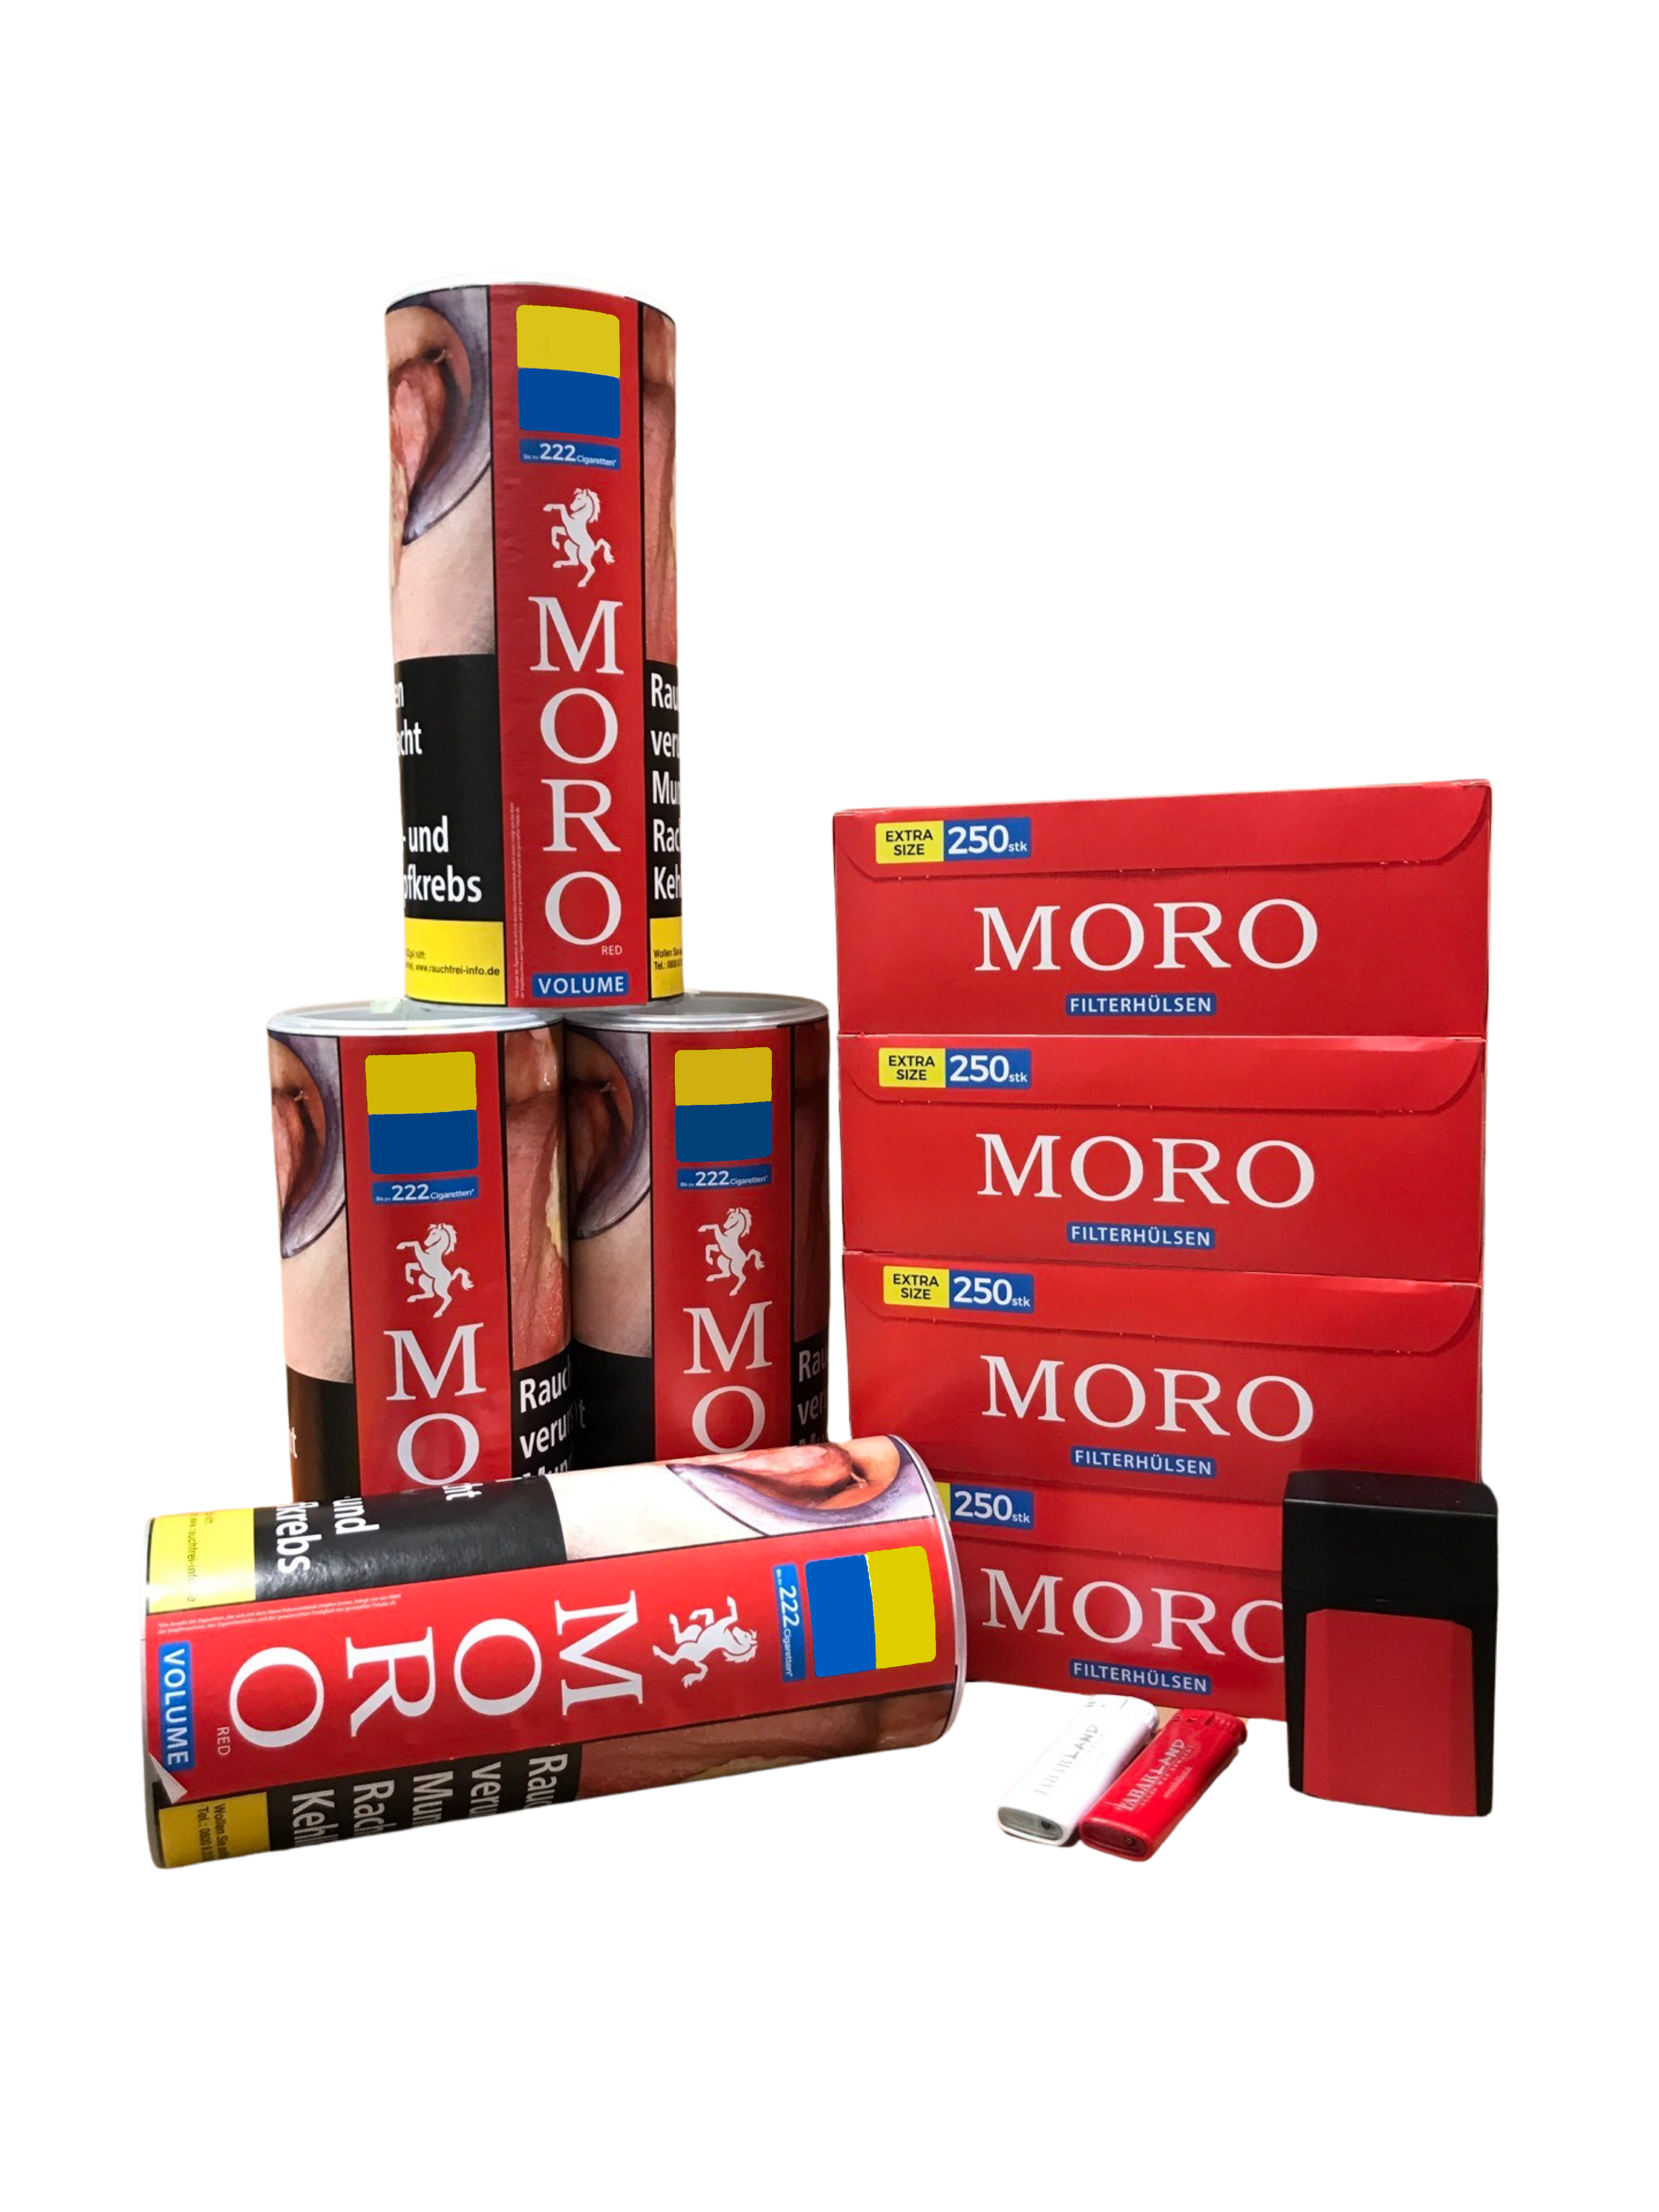 MORO Volumen 4 Dosen x 100 Gramm+ 1000 Moro Hülsen + 1 x Etui/ 2 x Feuer 